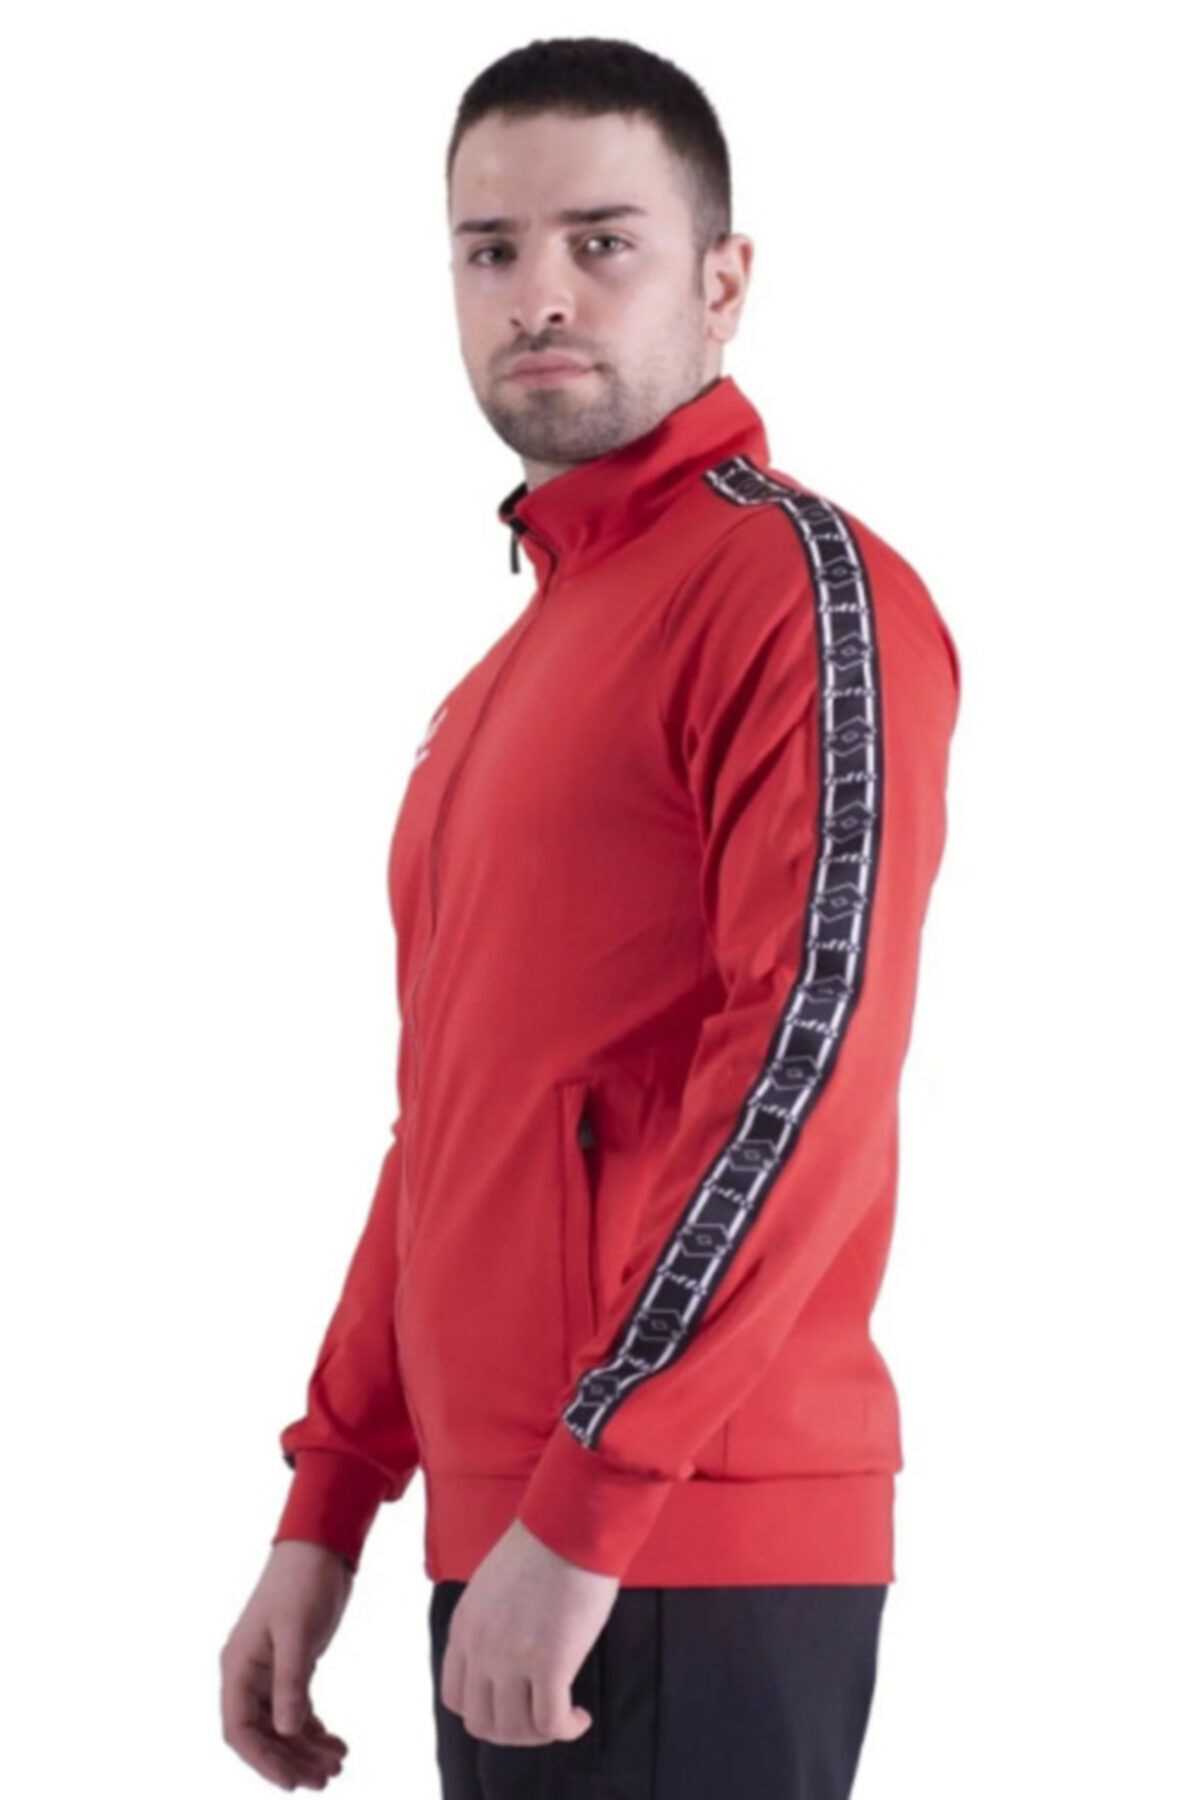 خرید انلاین ست گرمکن و شلوار ورزشی مردانه برند لوتو رنگ قرمز ty50957244